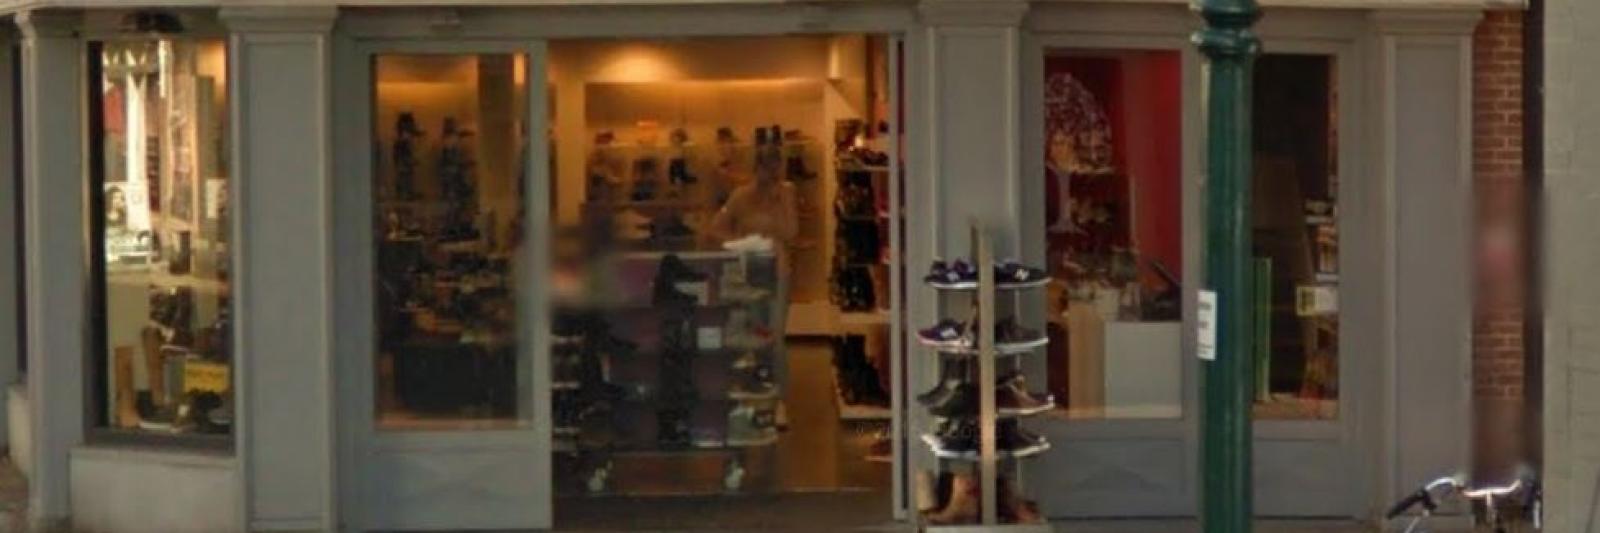 dek Behoren Verschillende goederen Verkoopster schoenenwinkel Hoorn opgepakt voor verzinnen gewapende overval  - NH Nieuws